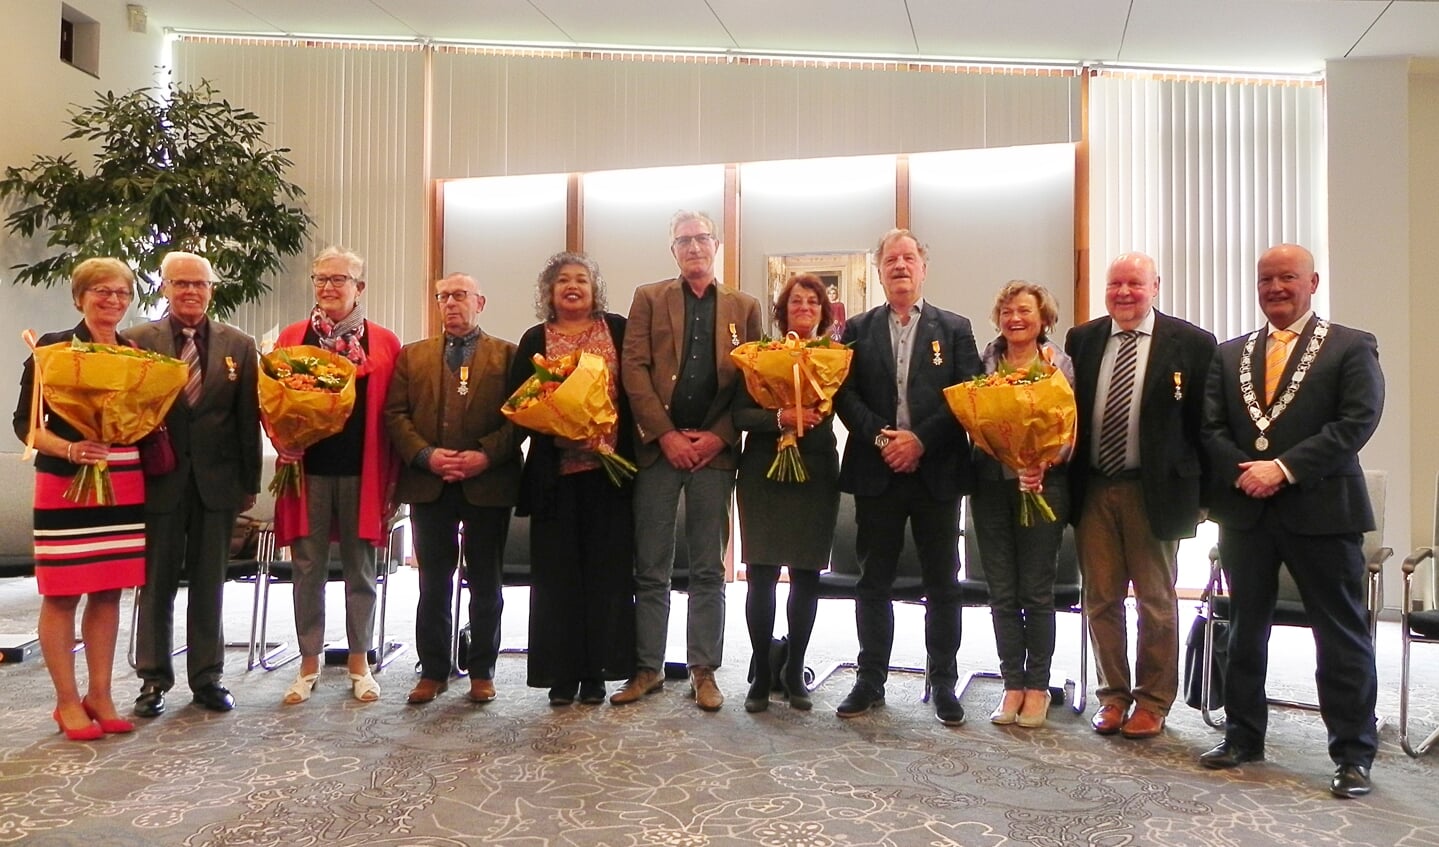 De 5 gedecoreerde mannen poseren met hun net verkregen lintje,  hun partners en burgemeester Ruud van Bennekom.